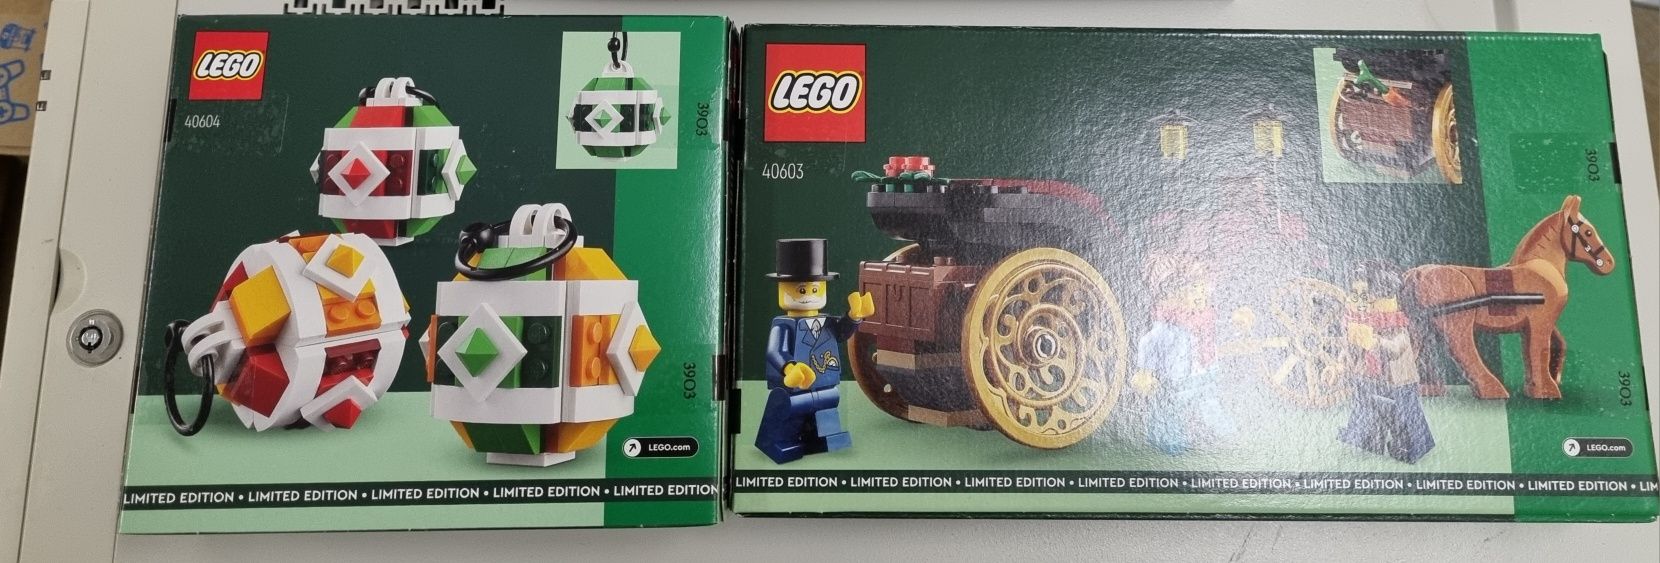 Lego Sigilat 40603